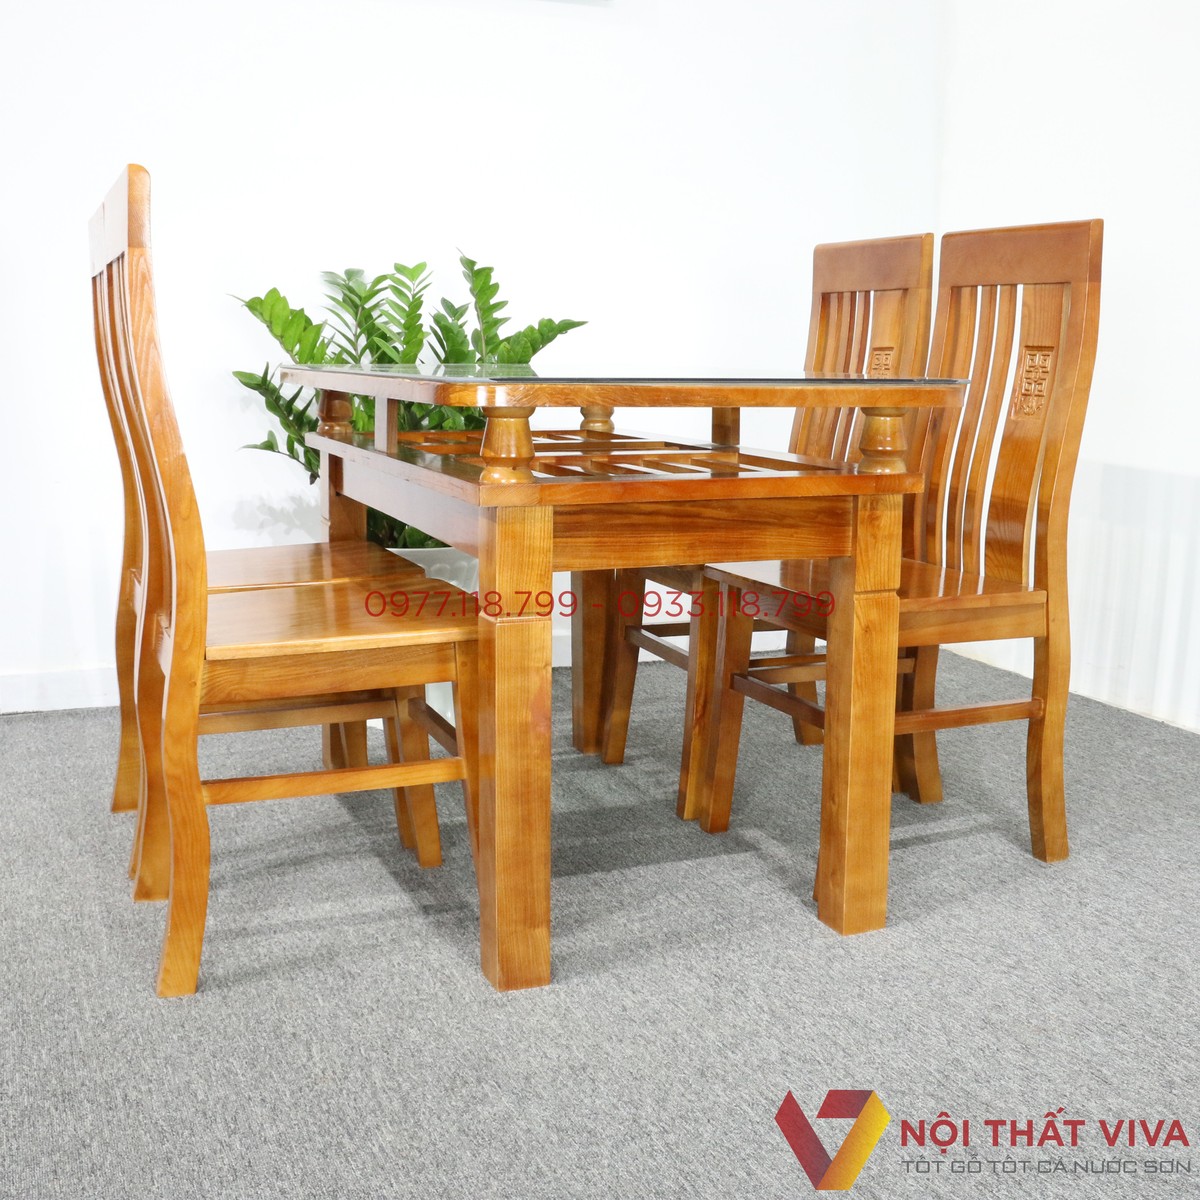 Các mẫu thiết kế bàn ăn gỗ sồi Nga 4 ghế nhỏ gọn cho căn hộ hiện đại 